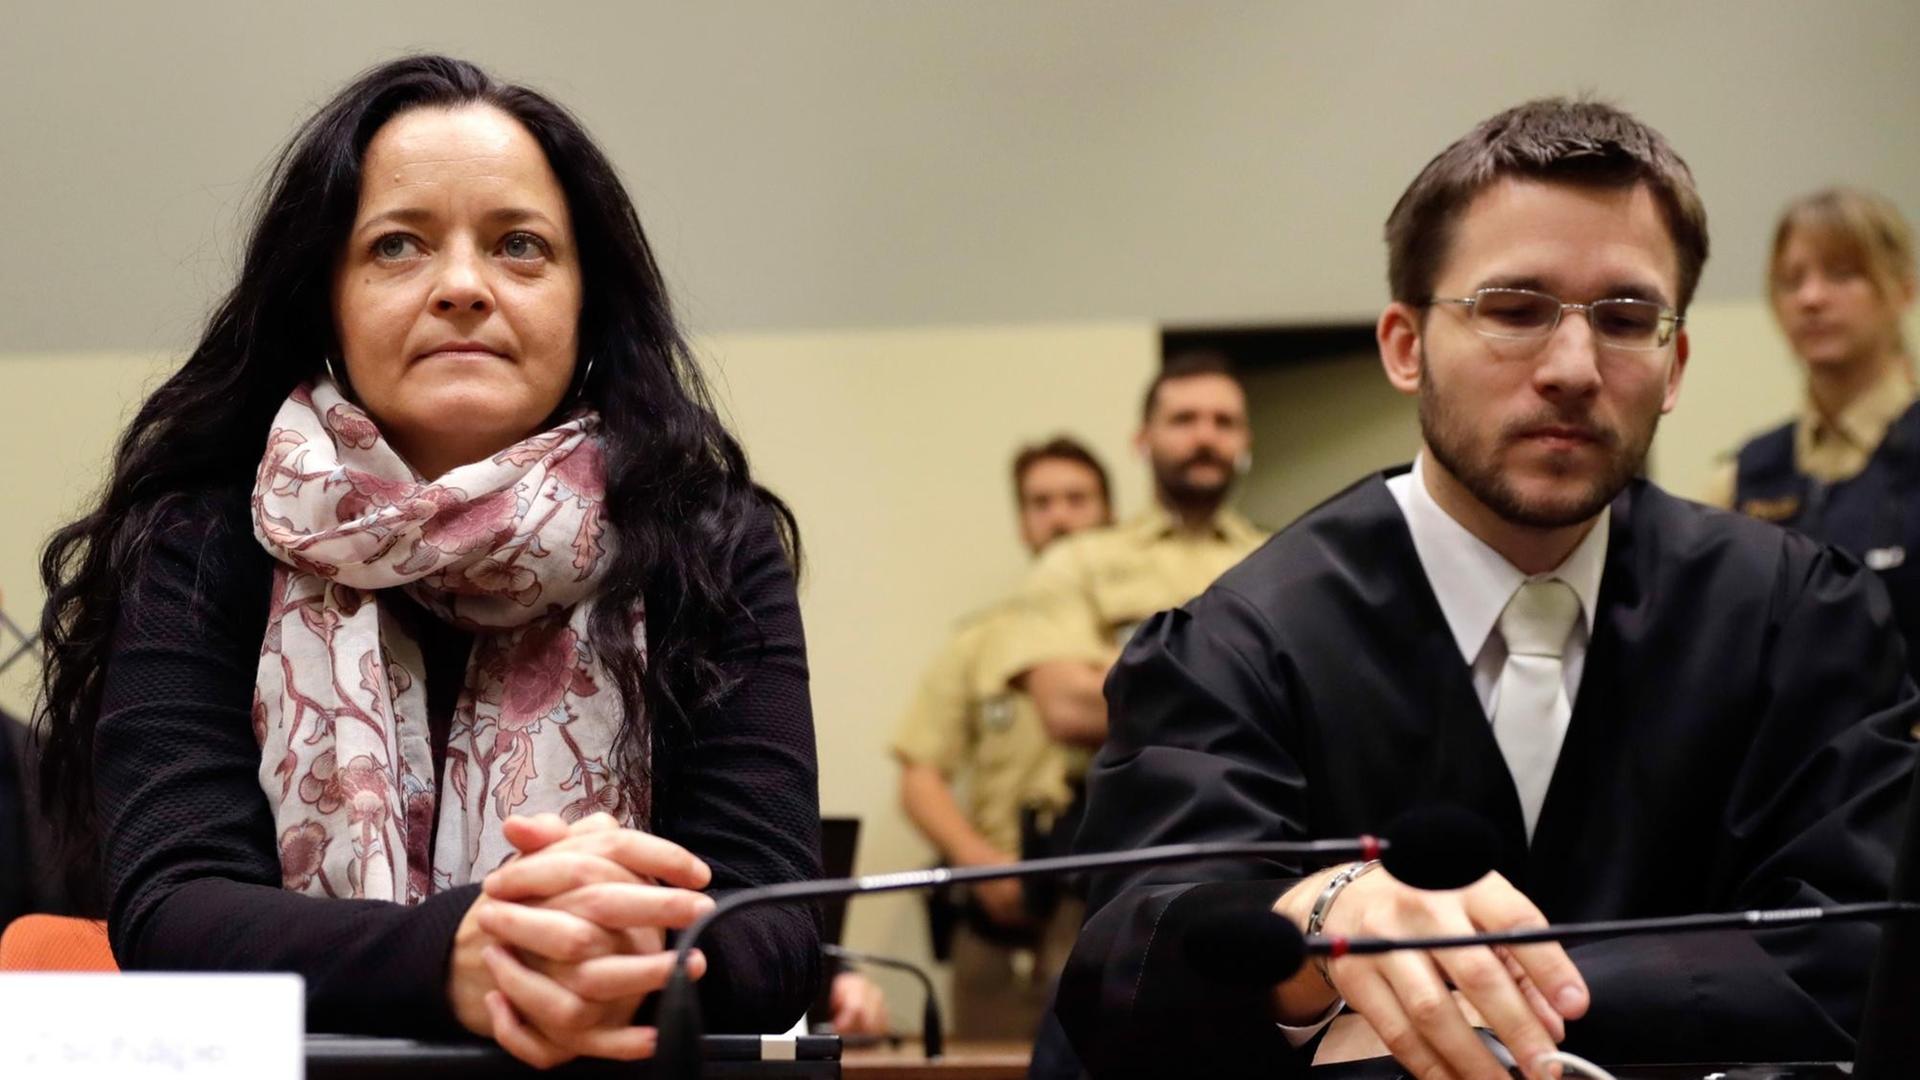  Die Angeklagte Beate Zschäpe sitzt neben ihrem Anwalt Mathias Grasel.